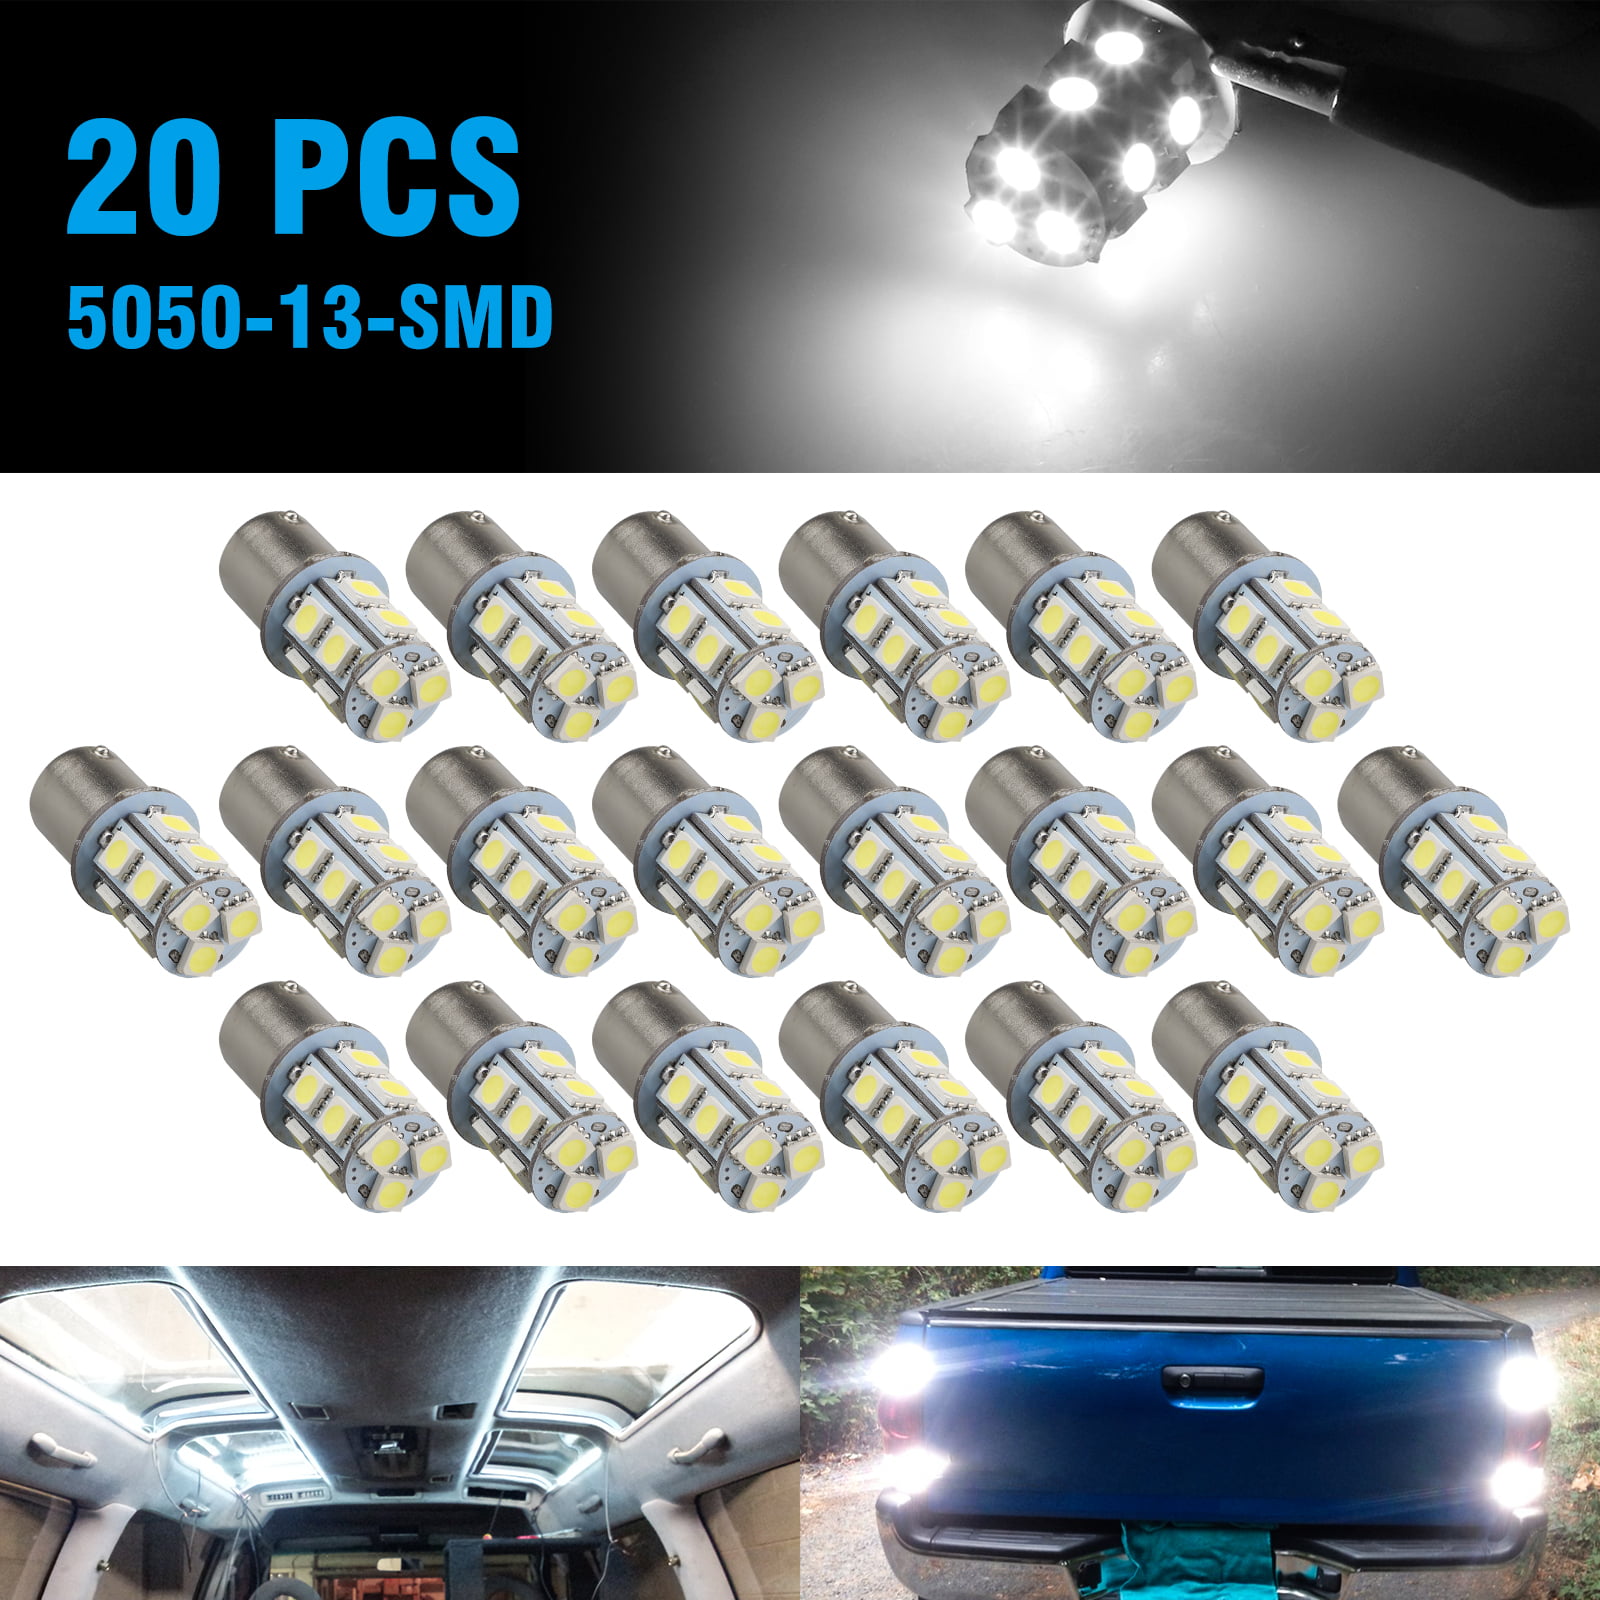 10pc 12V 1156 BA15S 5050 7503 1141 18SMD LED White Car RV Trailer Light Bulbs 